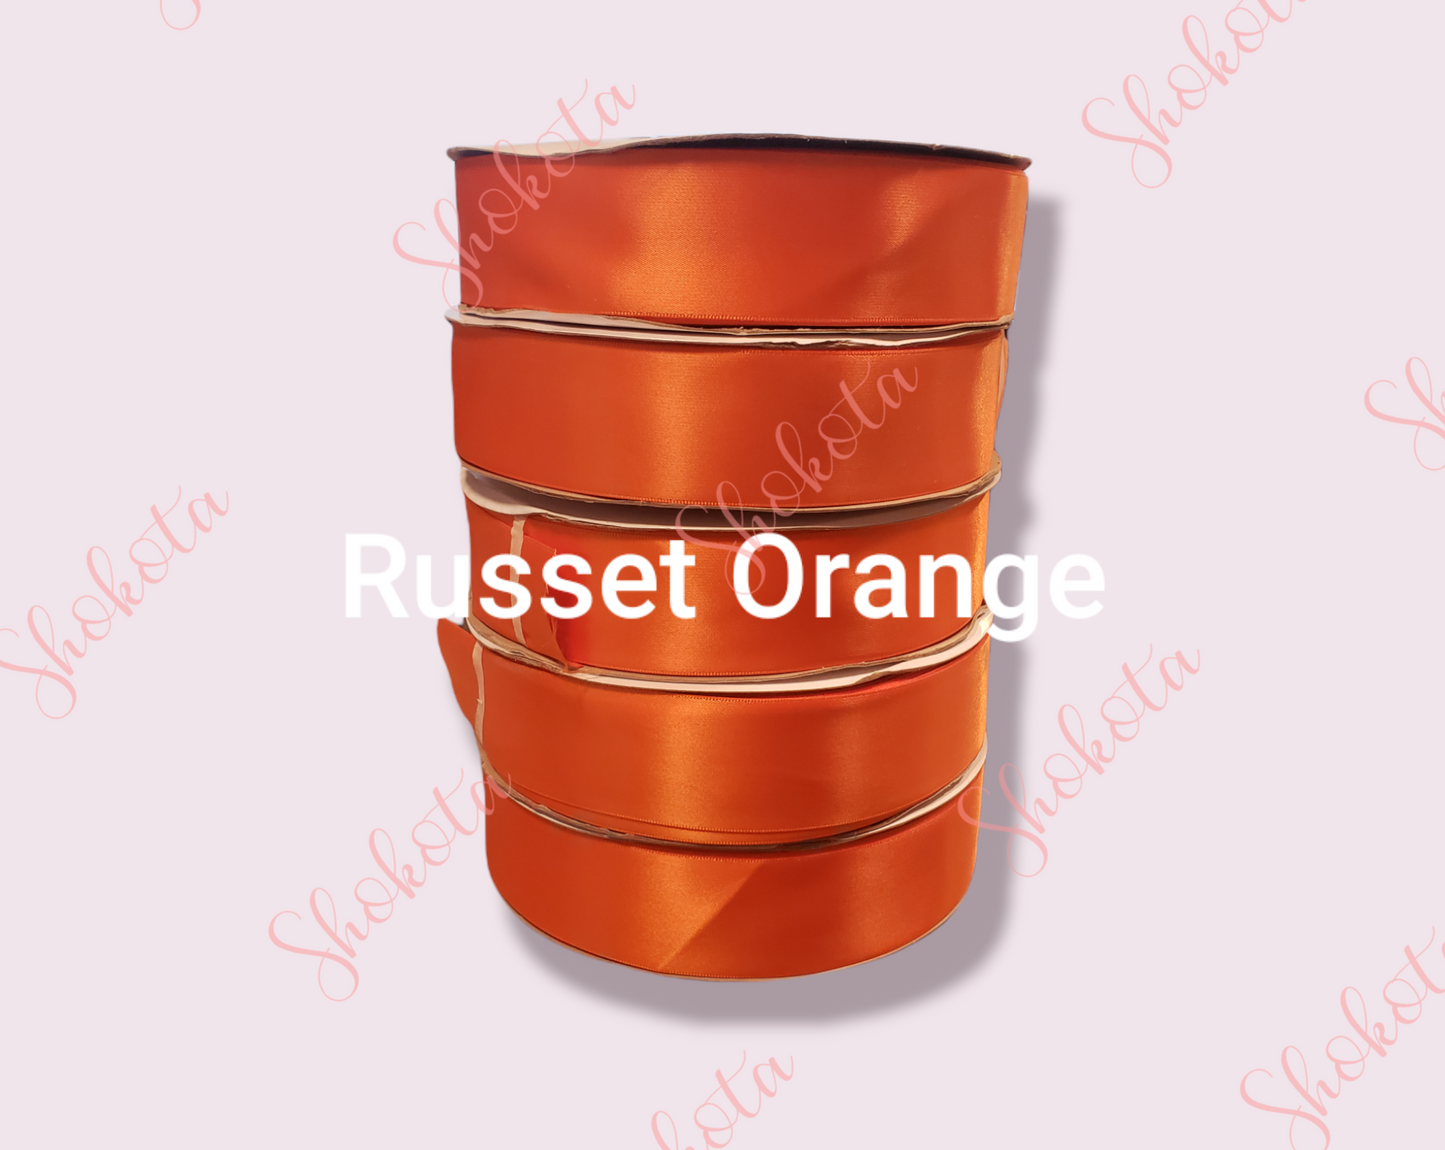 1 1/2" Russet Orange Satin Ribbon (100 Yard Spool)